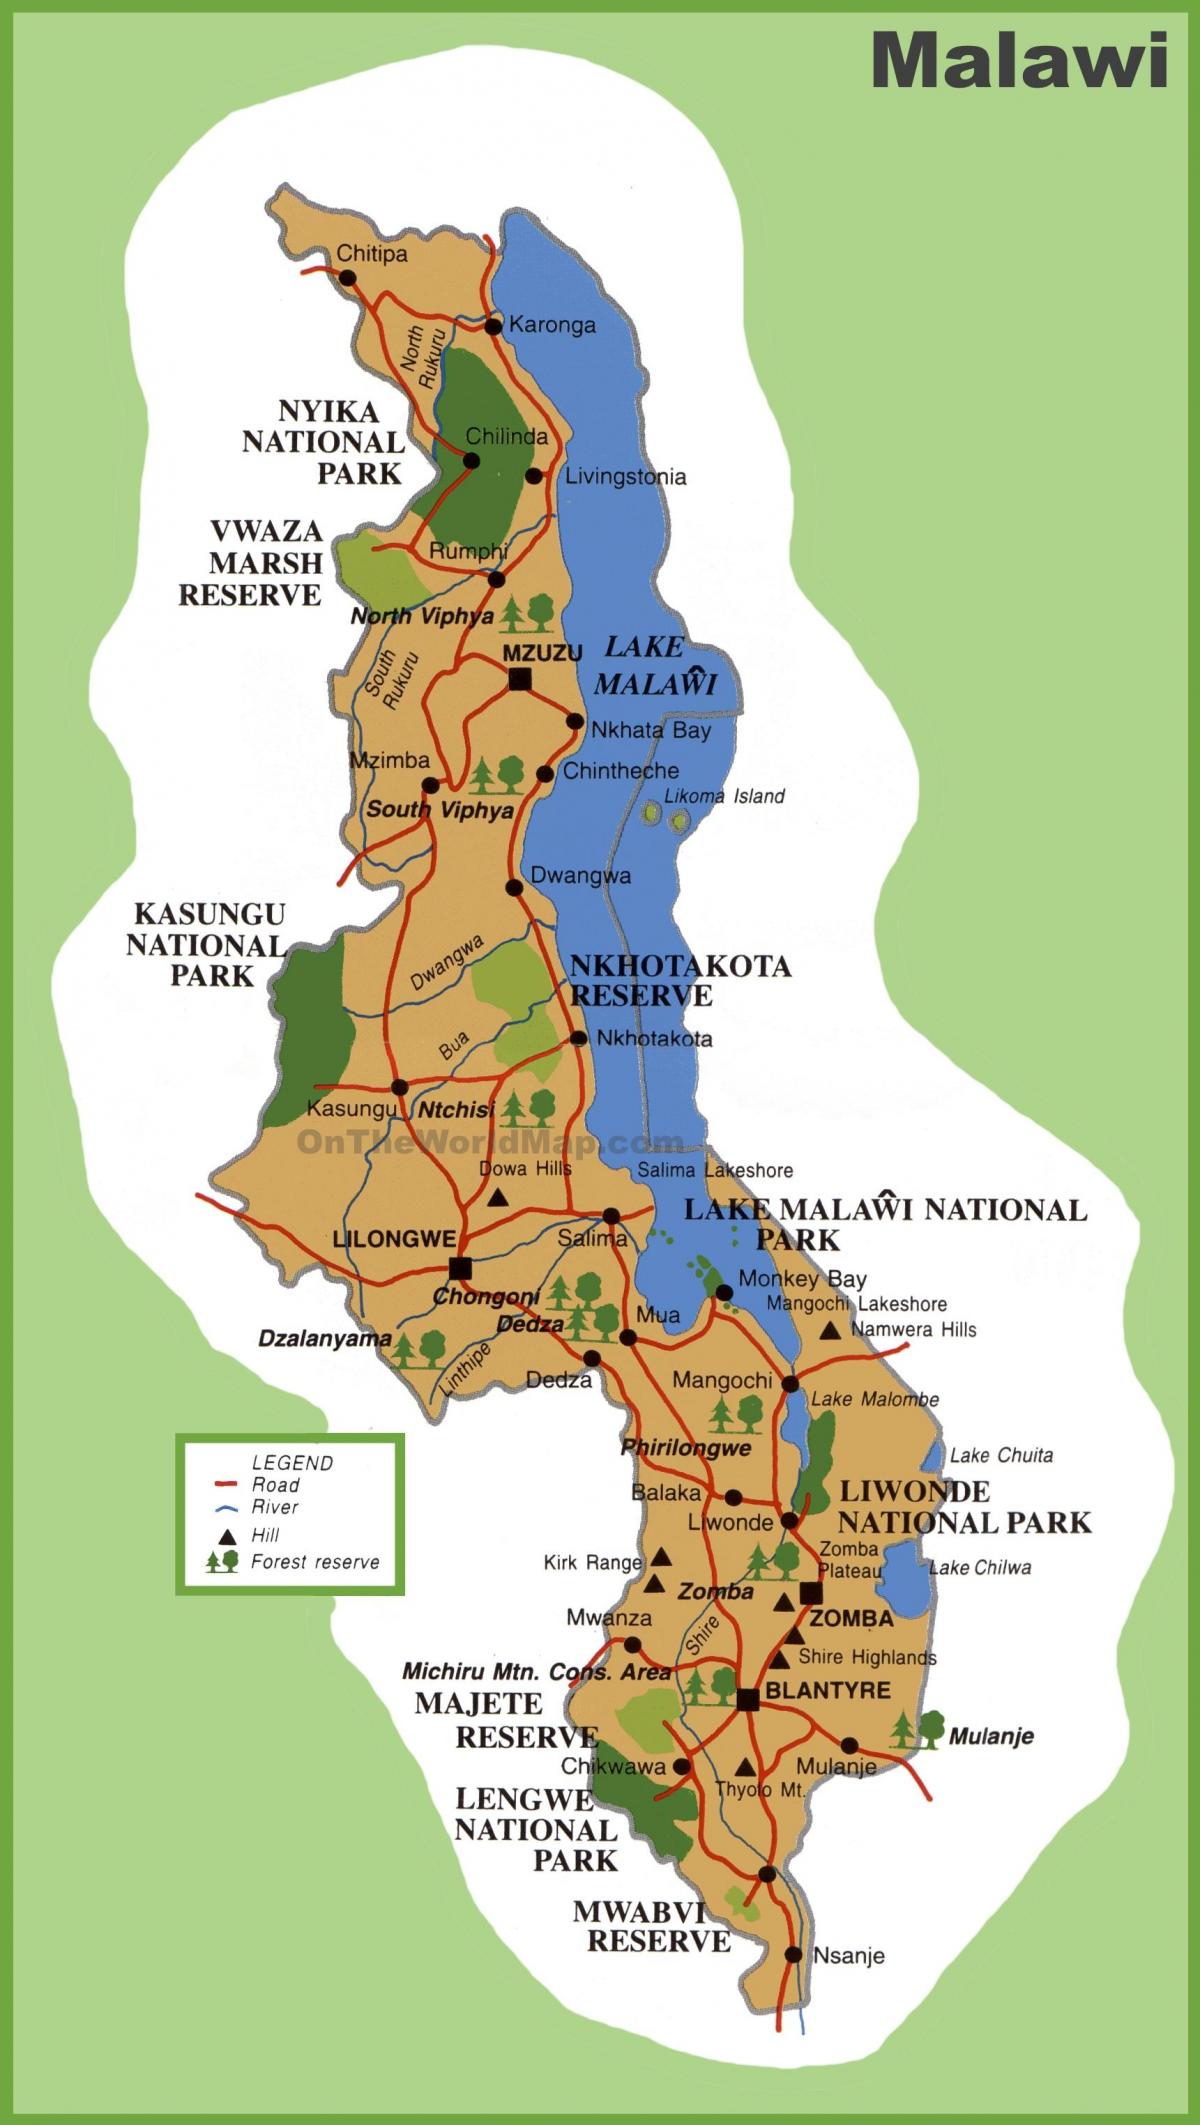 แผนที่ของมาลาวีและรอบๆแถวนี้แล้วประเทศ